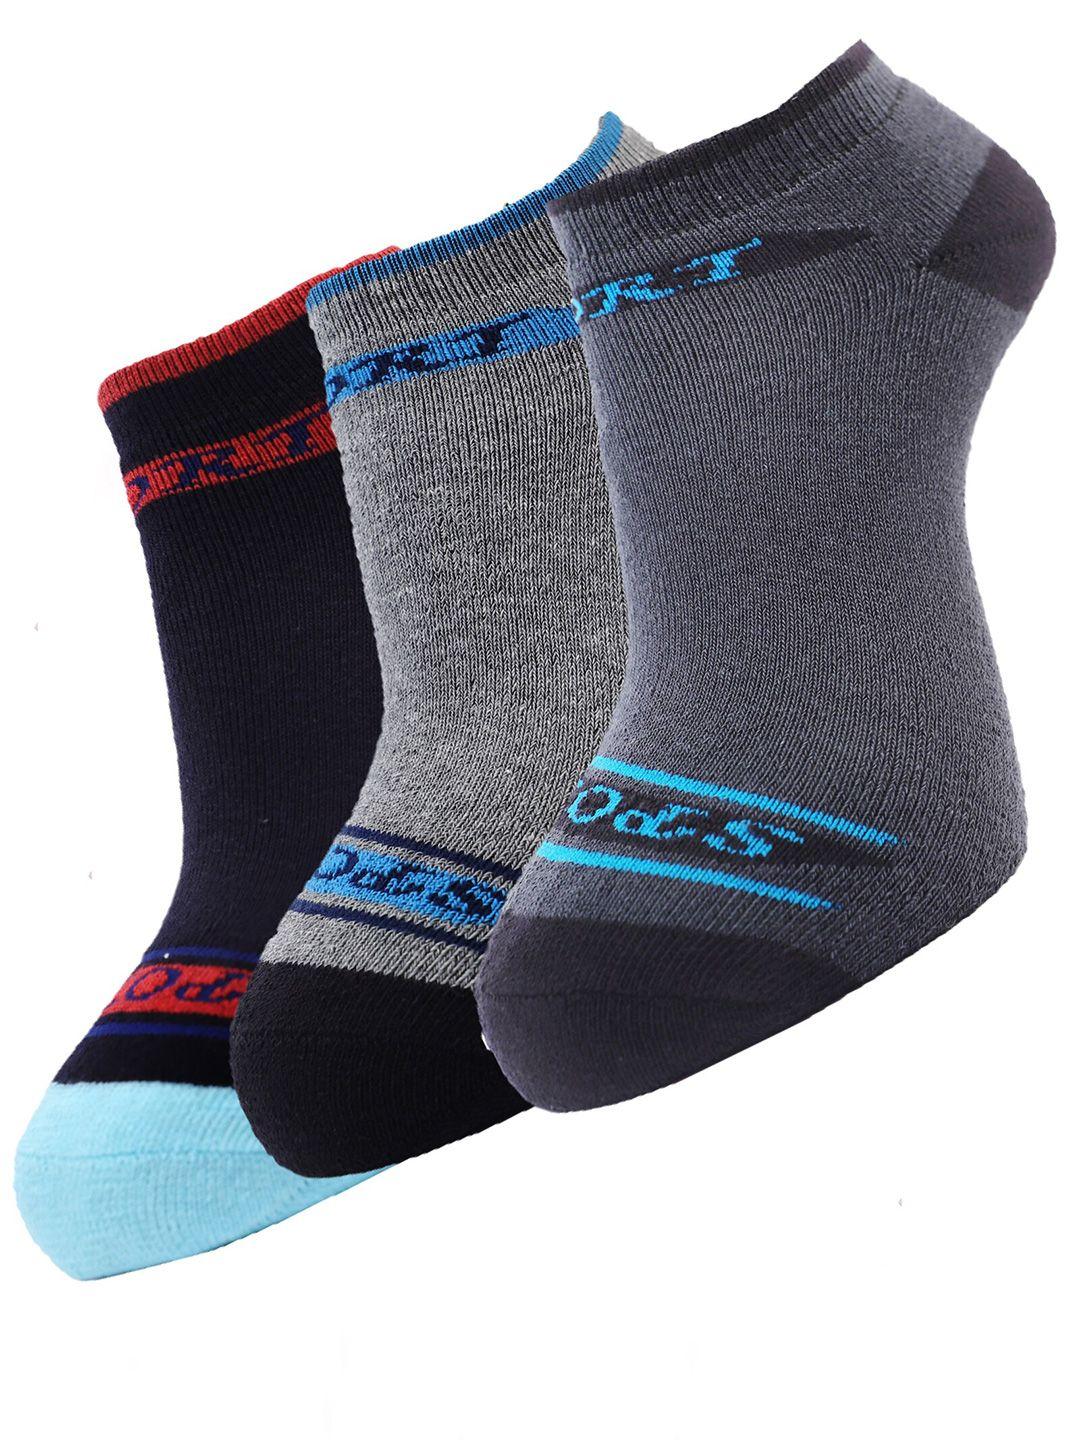 dollar-socks-men-pack-of-3-assorted-cotton-ankle-length-socks